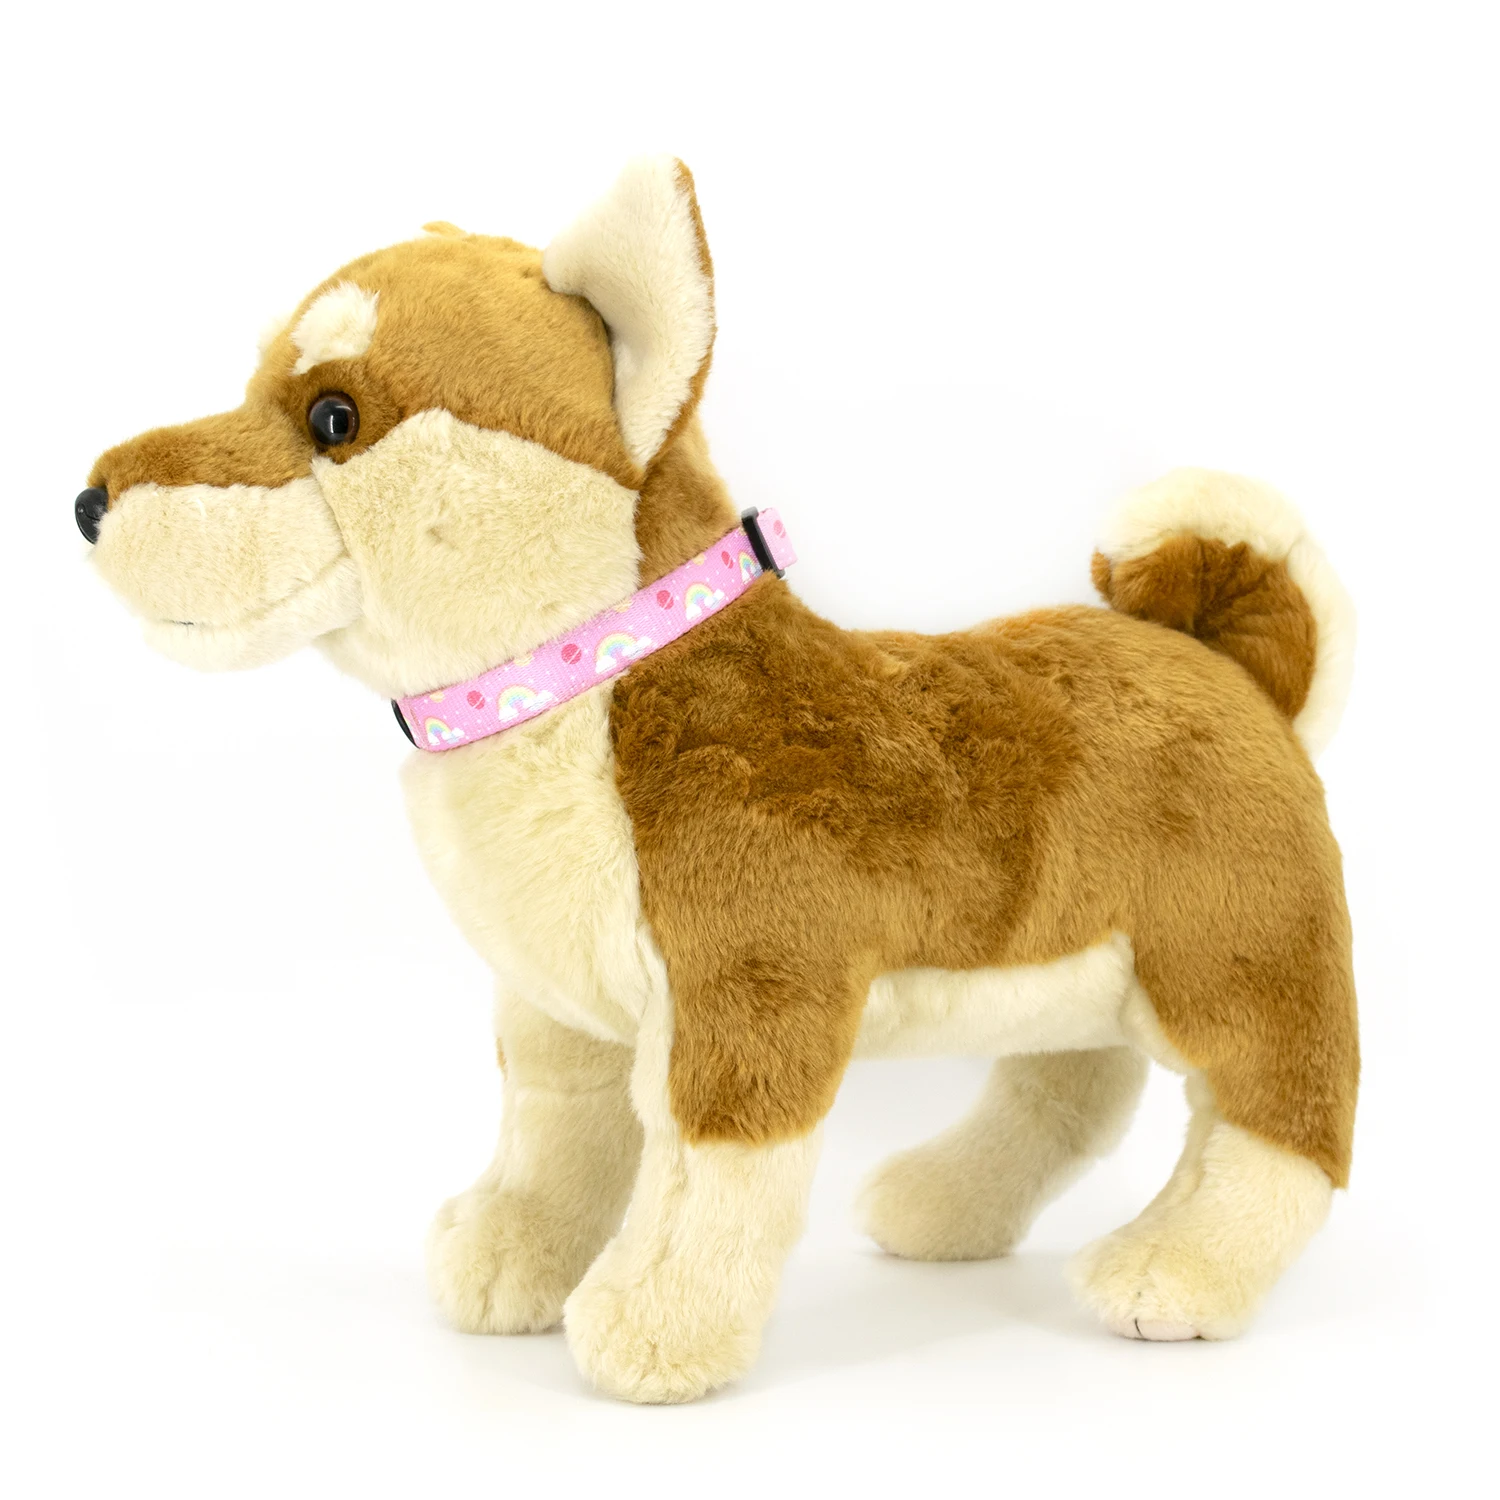 Tanie Collarlogo regulowana obroża dla psa wytrzymała miękka śliczna kreatywna kolorowa tęcza Design smycz neoprenowy sklep